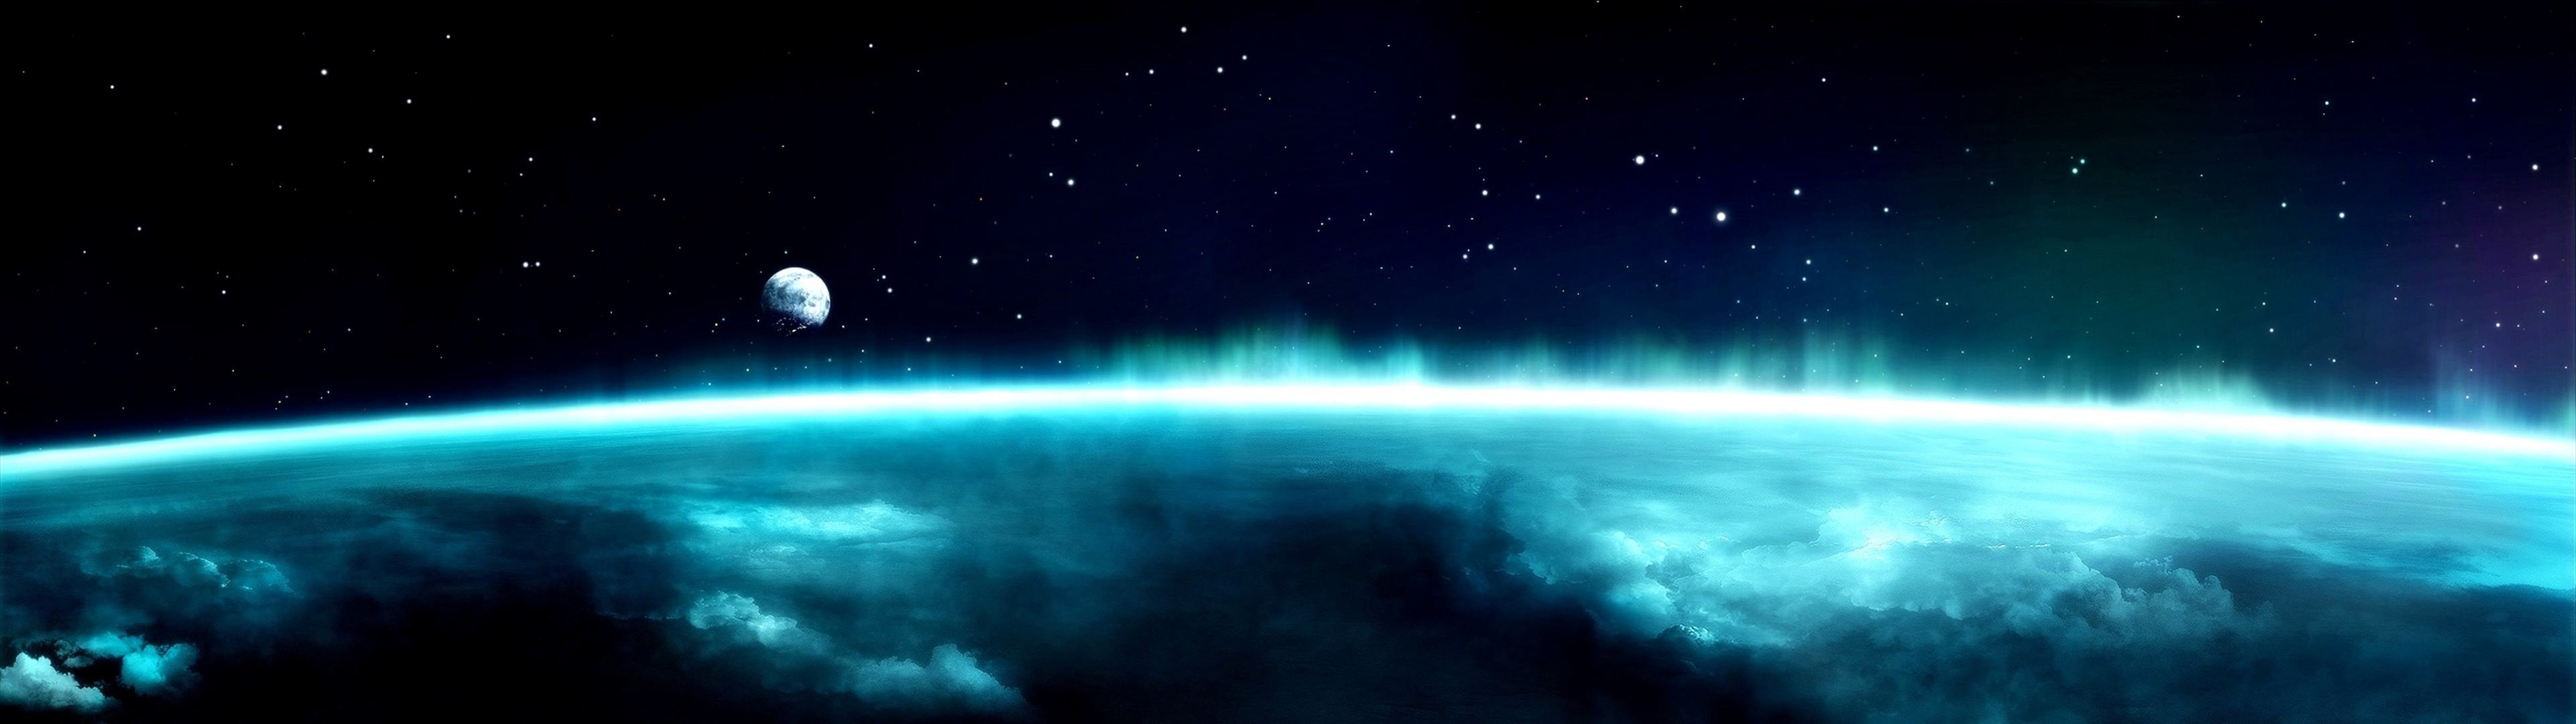 4480x1080 fondo de pantalla,atmósfera,espacio exterior,naturaleza,cielo,objeto astronómico